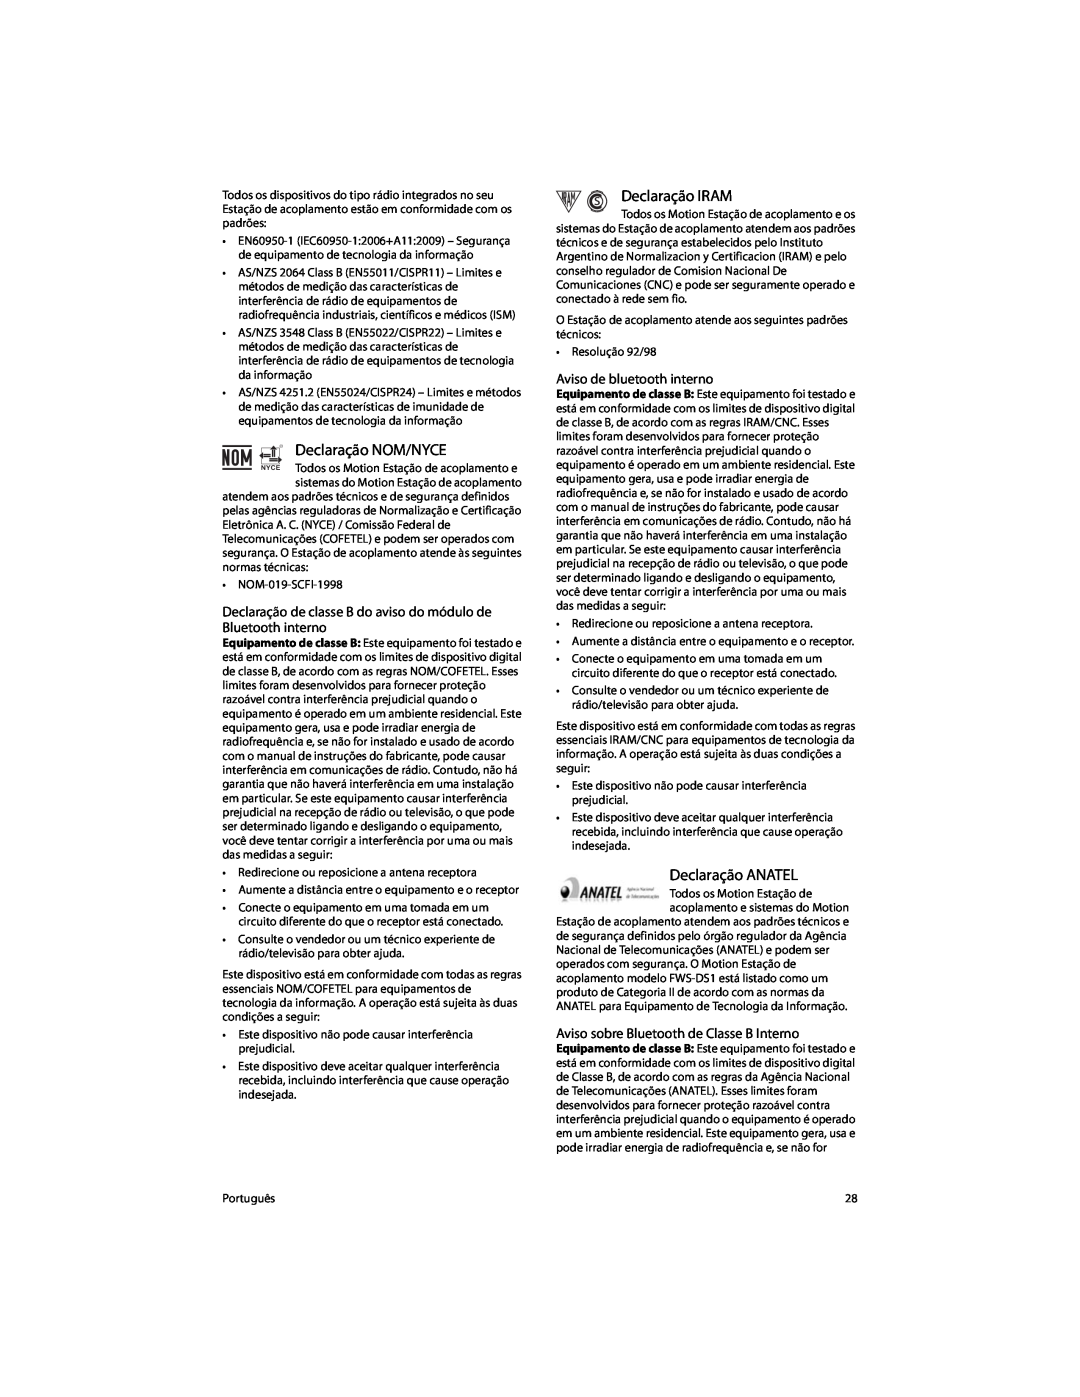 Motion Computing FWS-DS1 warranty Declaração NOM/NYCE, Declaração IRAM, Declaração ANATEL, Aviso de bluetooth interno 